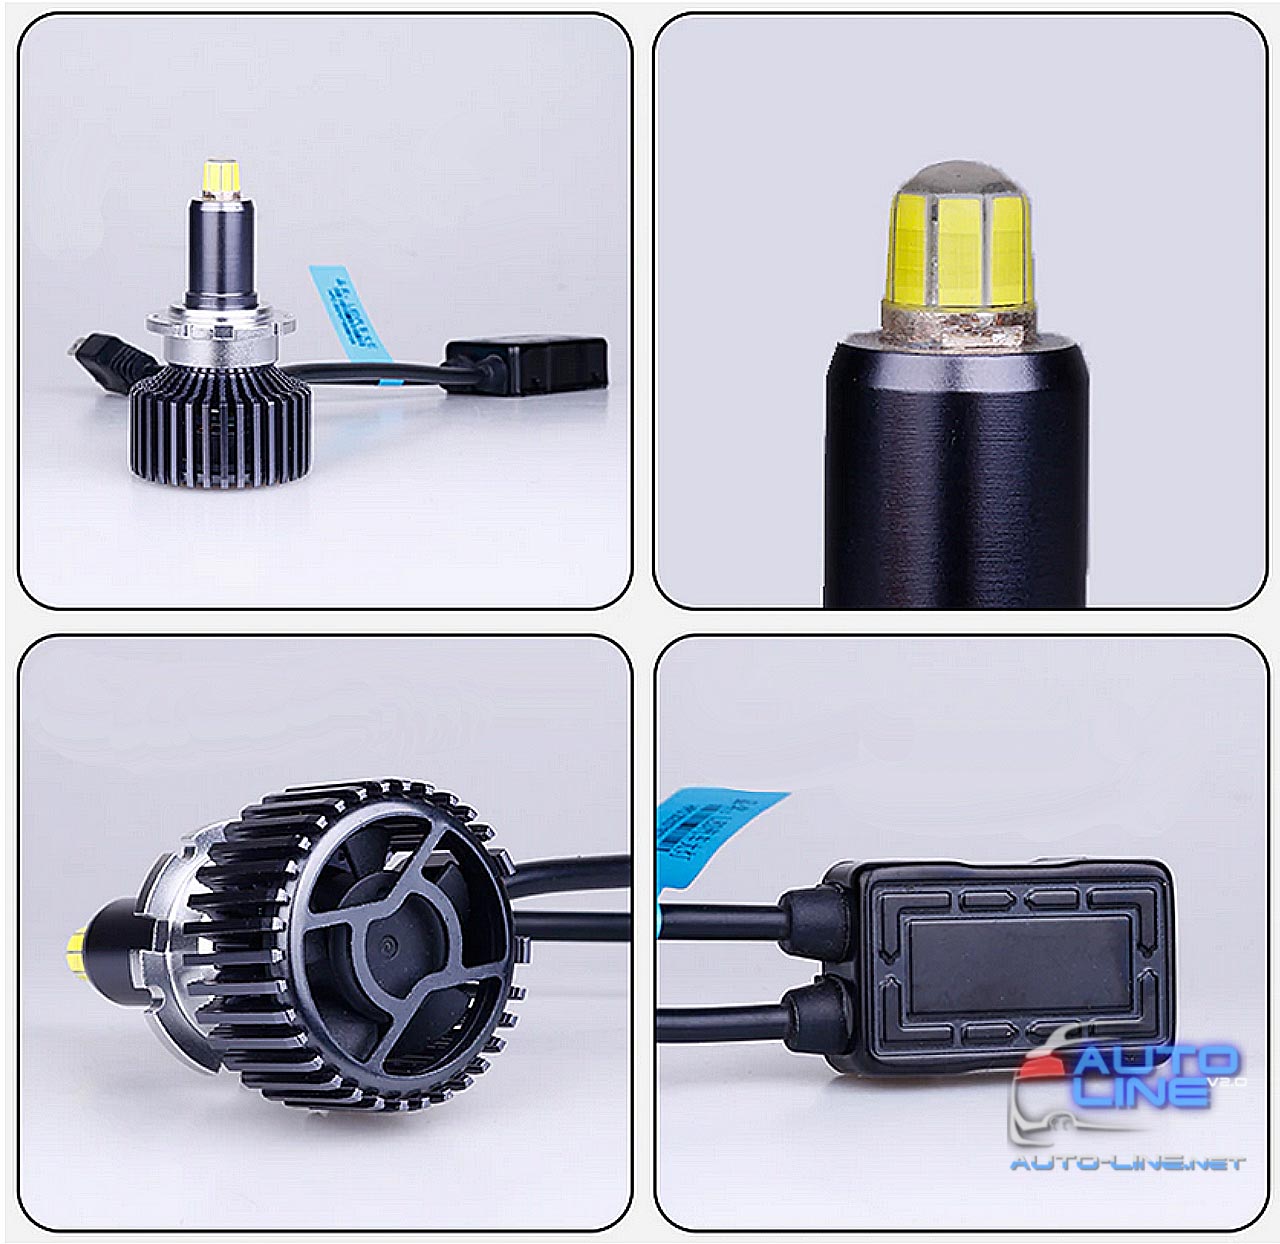 B-Power LED ST D4S 25000Lm — мощные LED-лампы D4S 360 градусов для линз